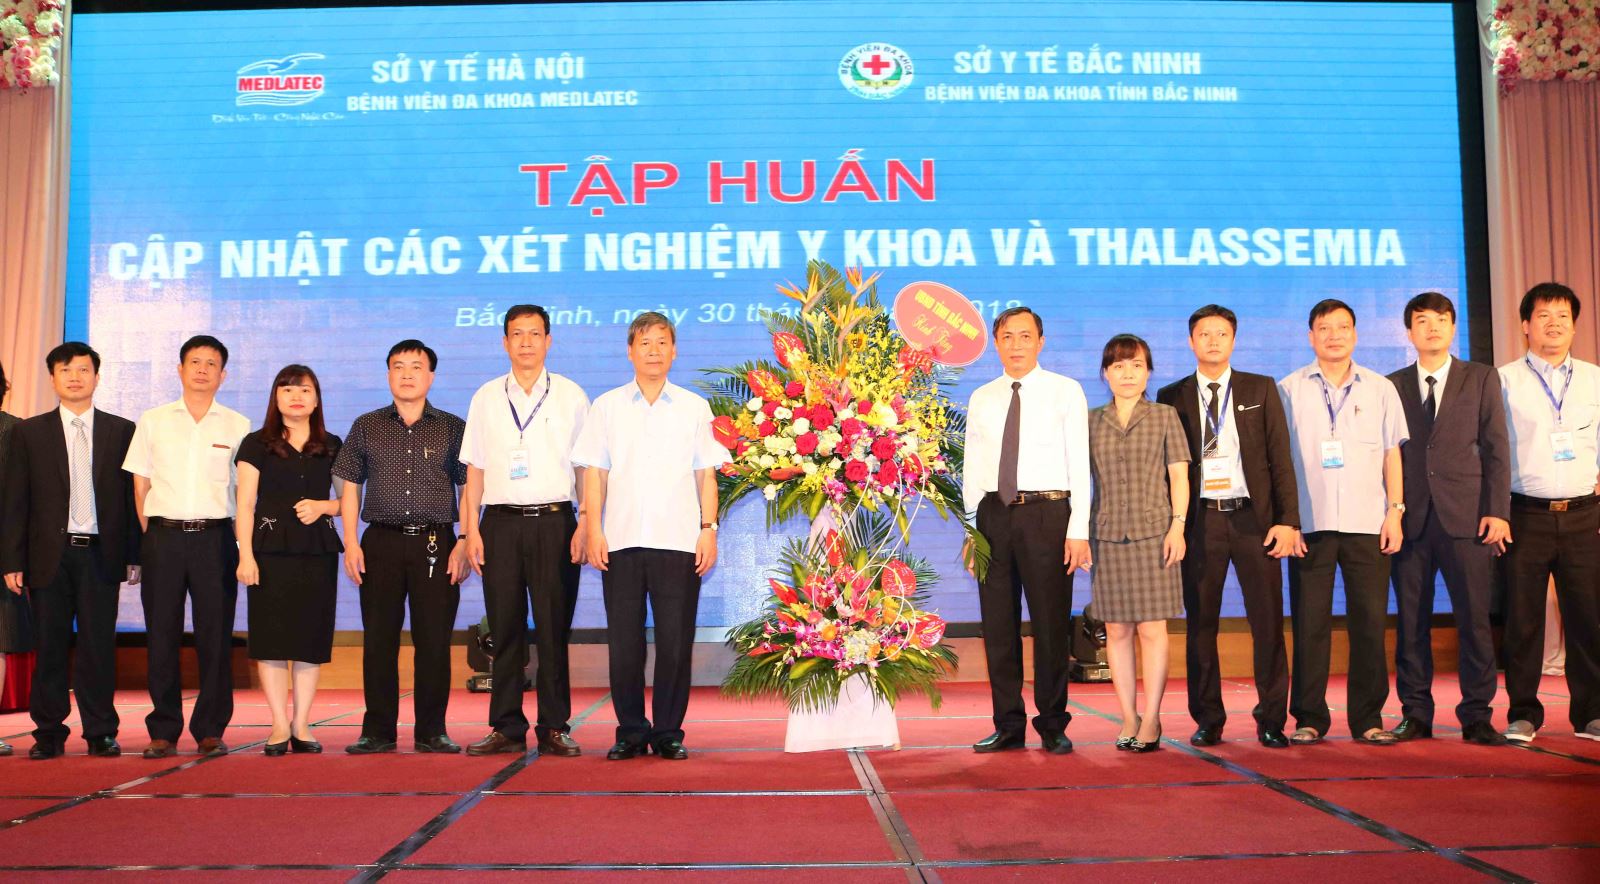 Đ/c Nguyễn Văn Phong – Phó chủ tịch UBND tỉnh Bắc Ninh  tặng hoa chúc mừng Hội nghị